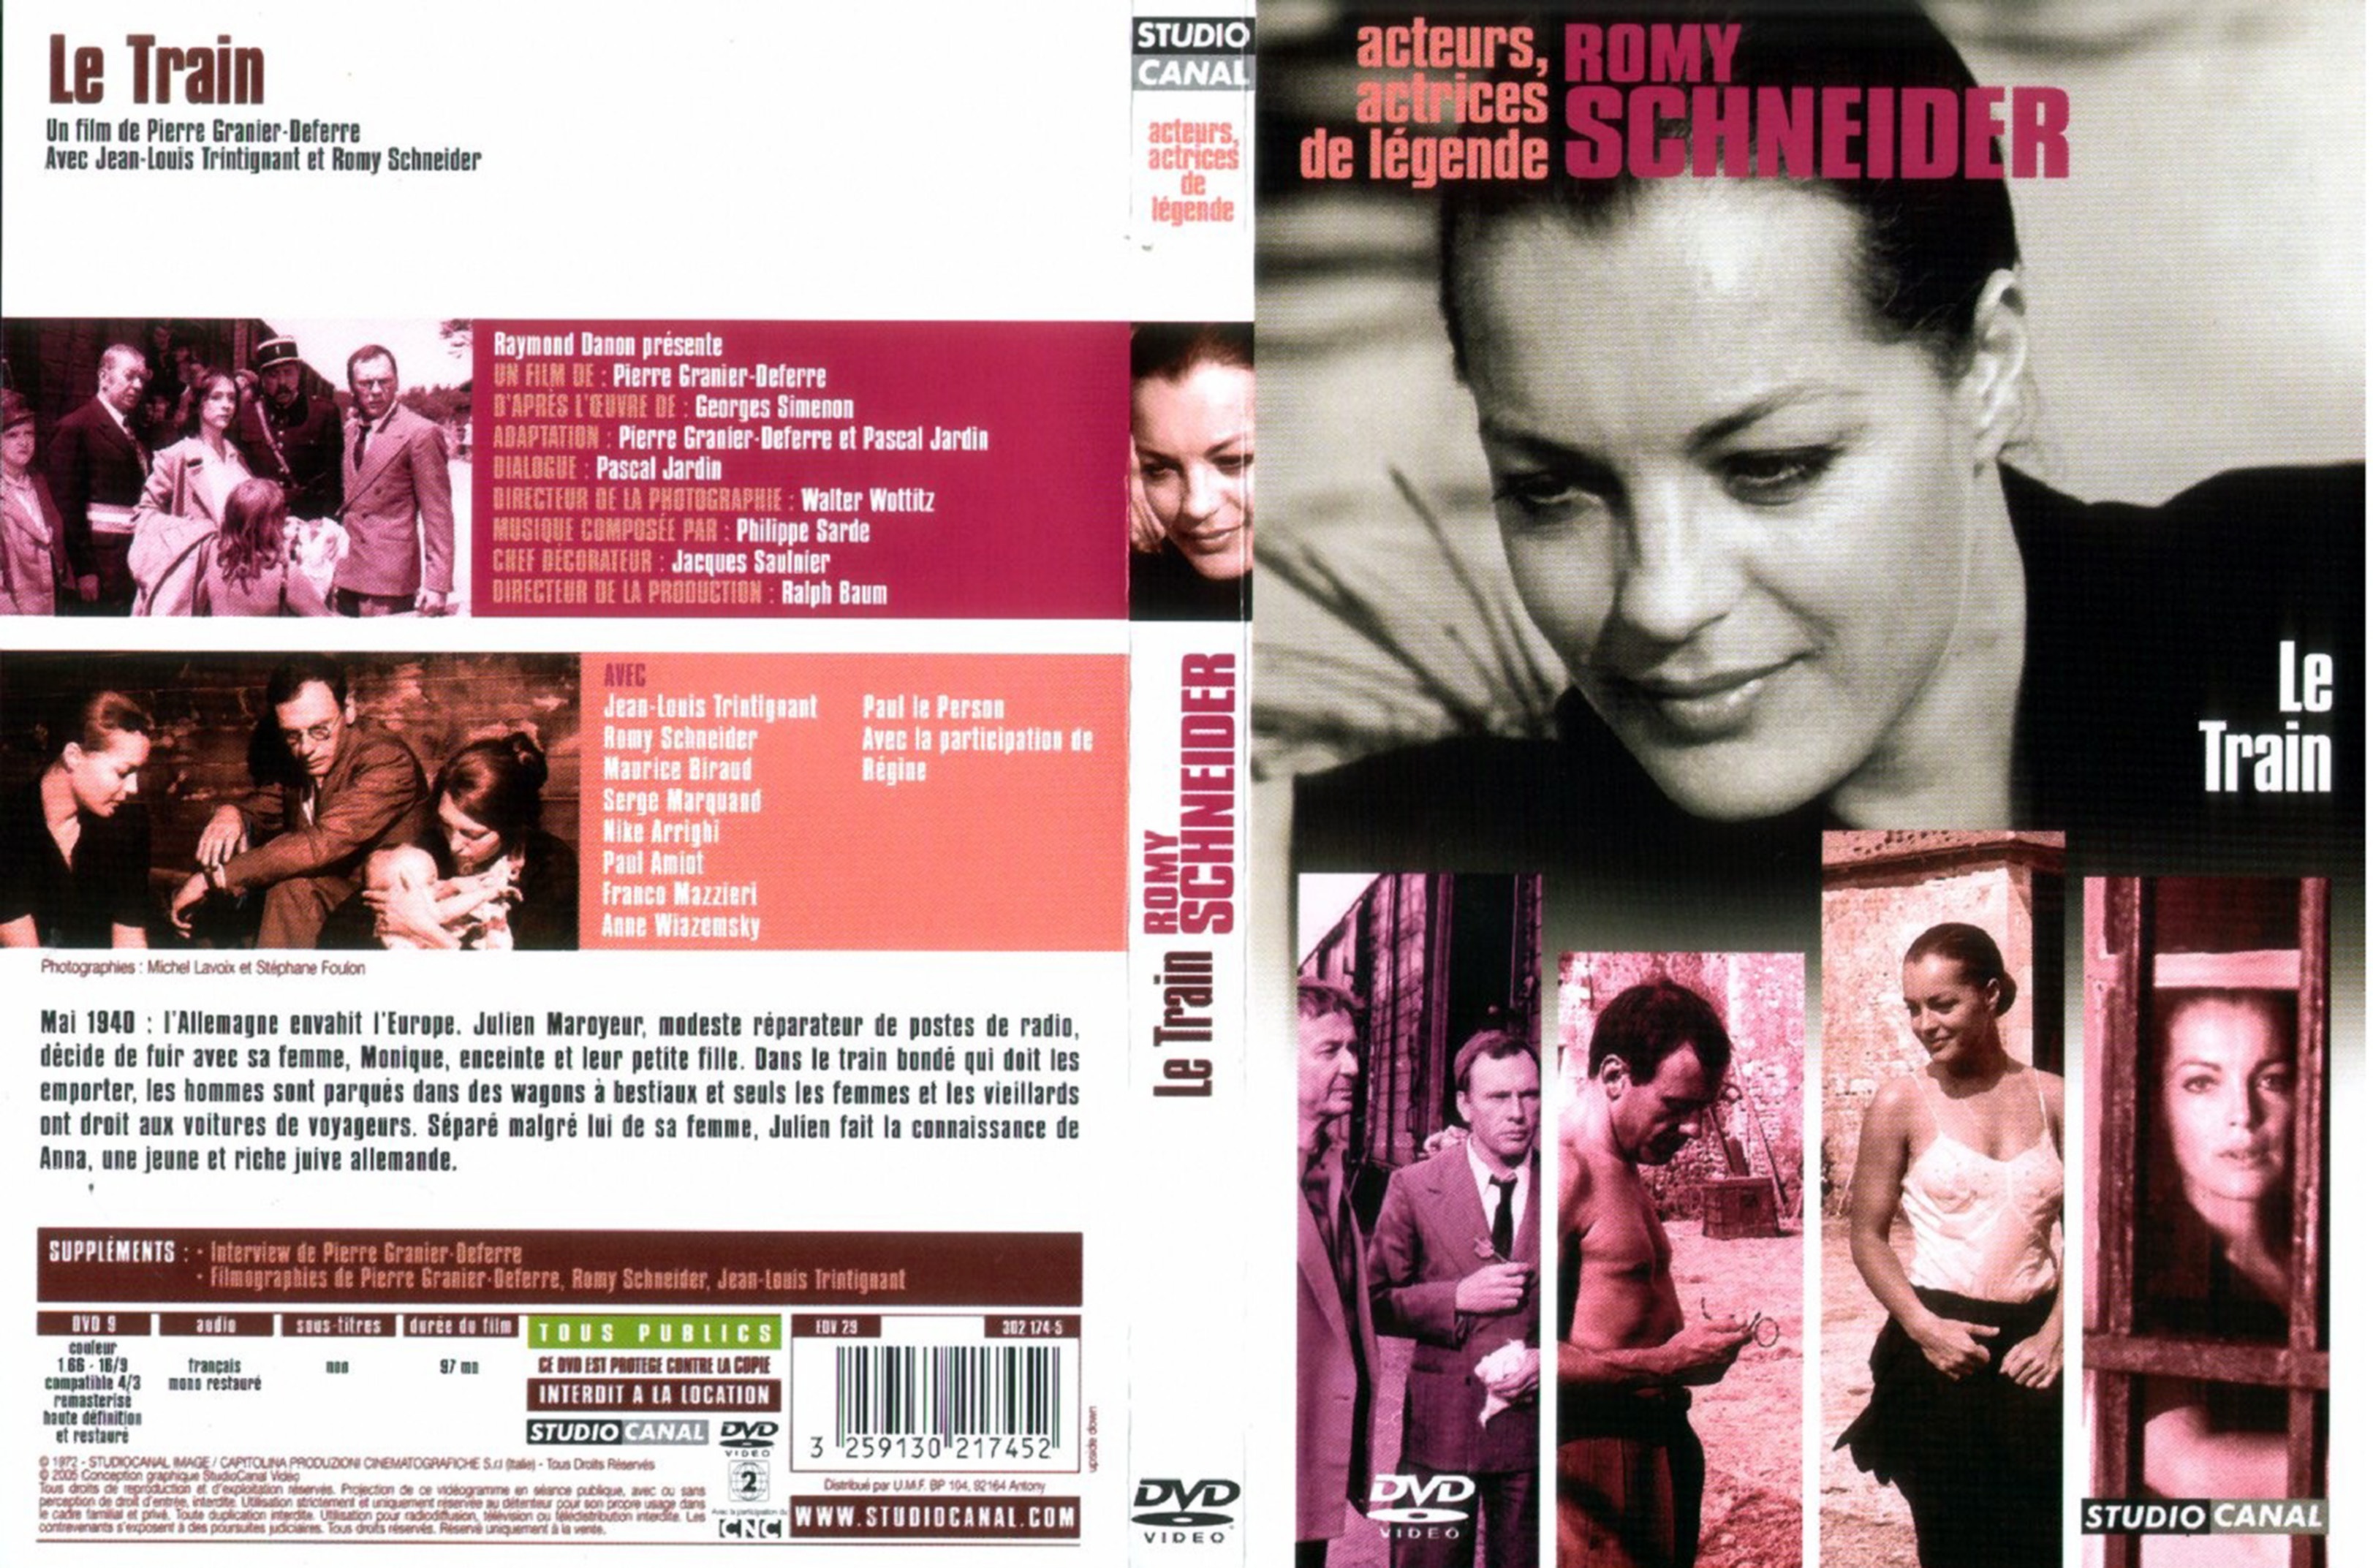 Jaquette DVD Le train (Romy Schneider) v2